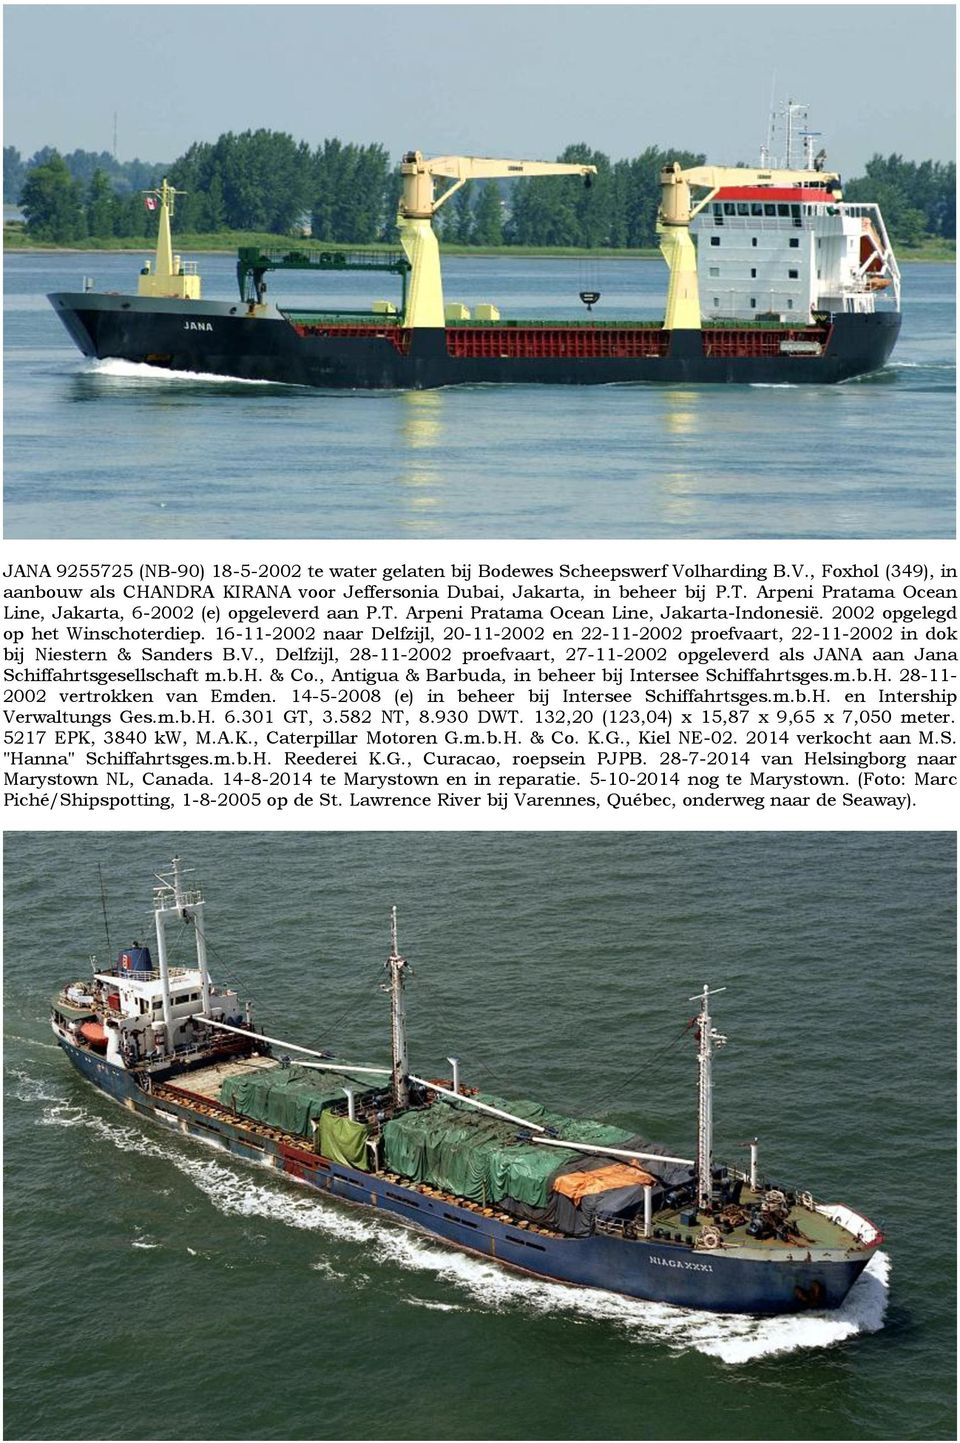 16-11-2002 naar Delfzijl, 20-11-2002 en 22-11-2002 proefvaart, 22-11-2002 in dok bij Niestern & Sanders B.V.